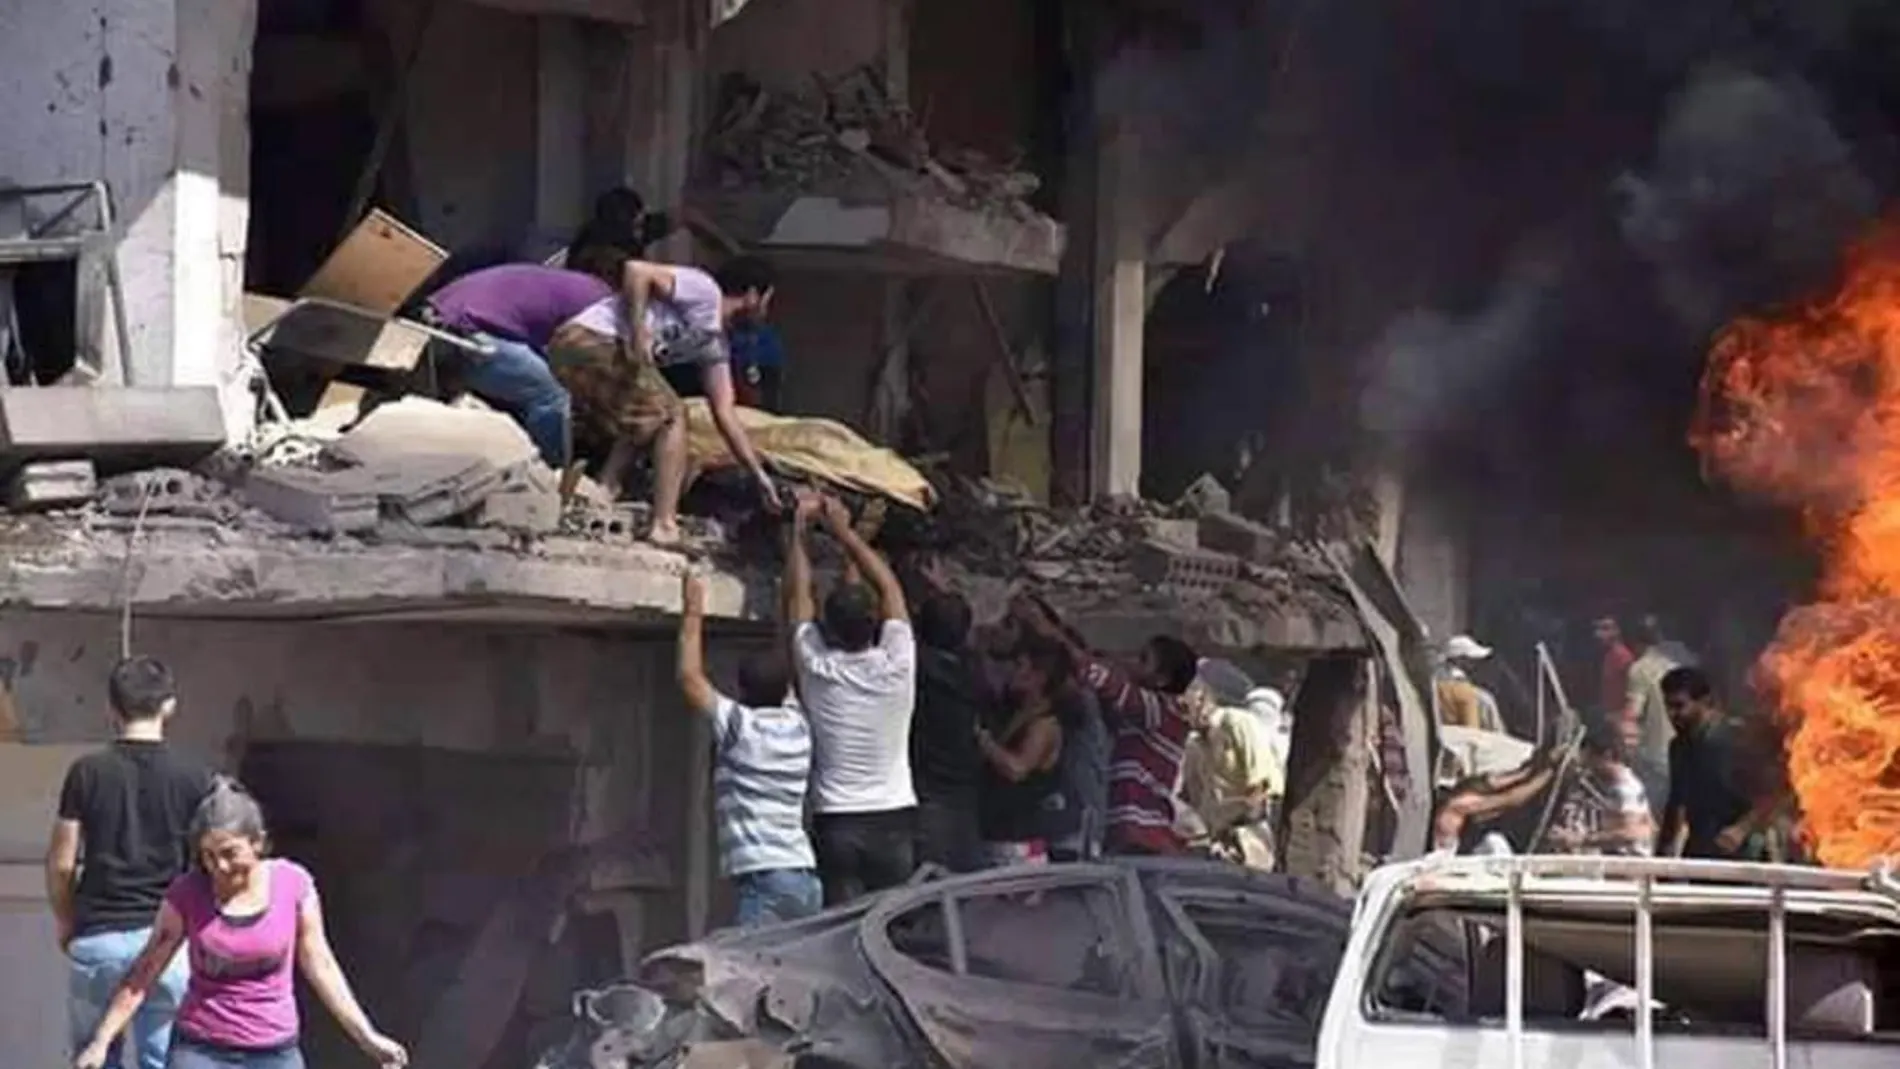 Fotografía facilitada por la Agencia Oficial de Noticias siria, SANA, que muestra a varias personas mientras trasladan un cuerpo tras la explosión de una bomba en Qameshli, Siria